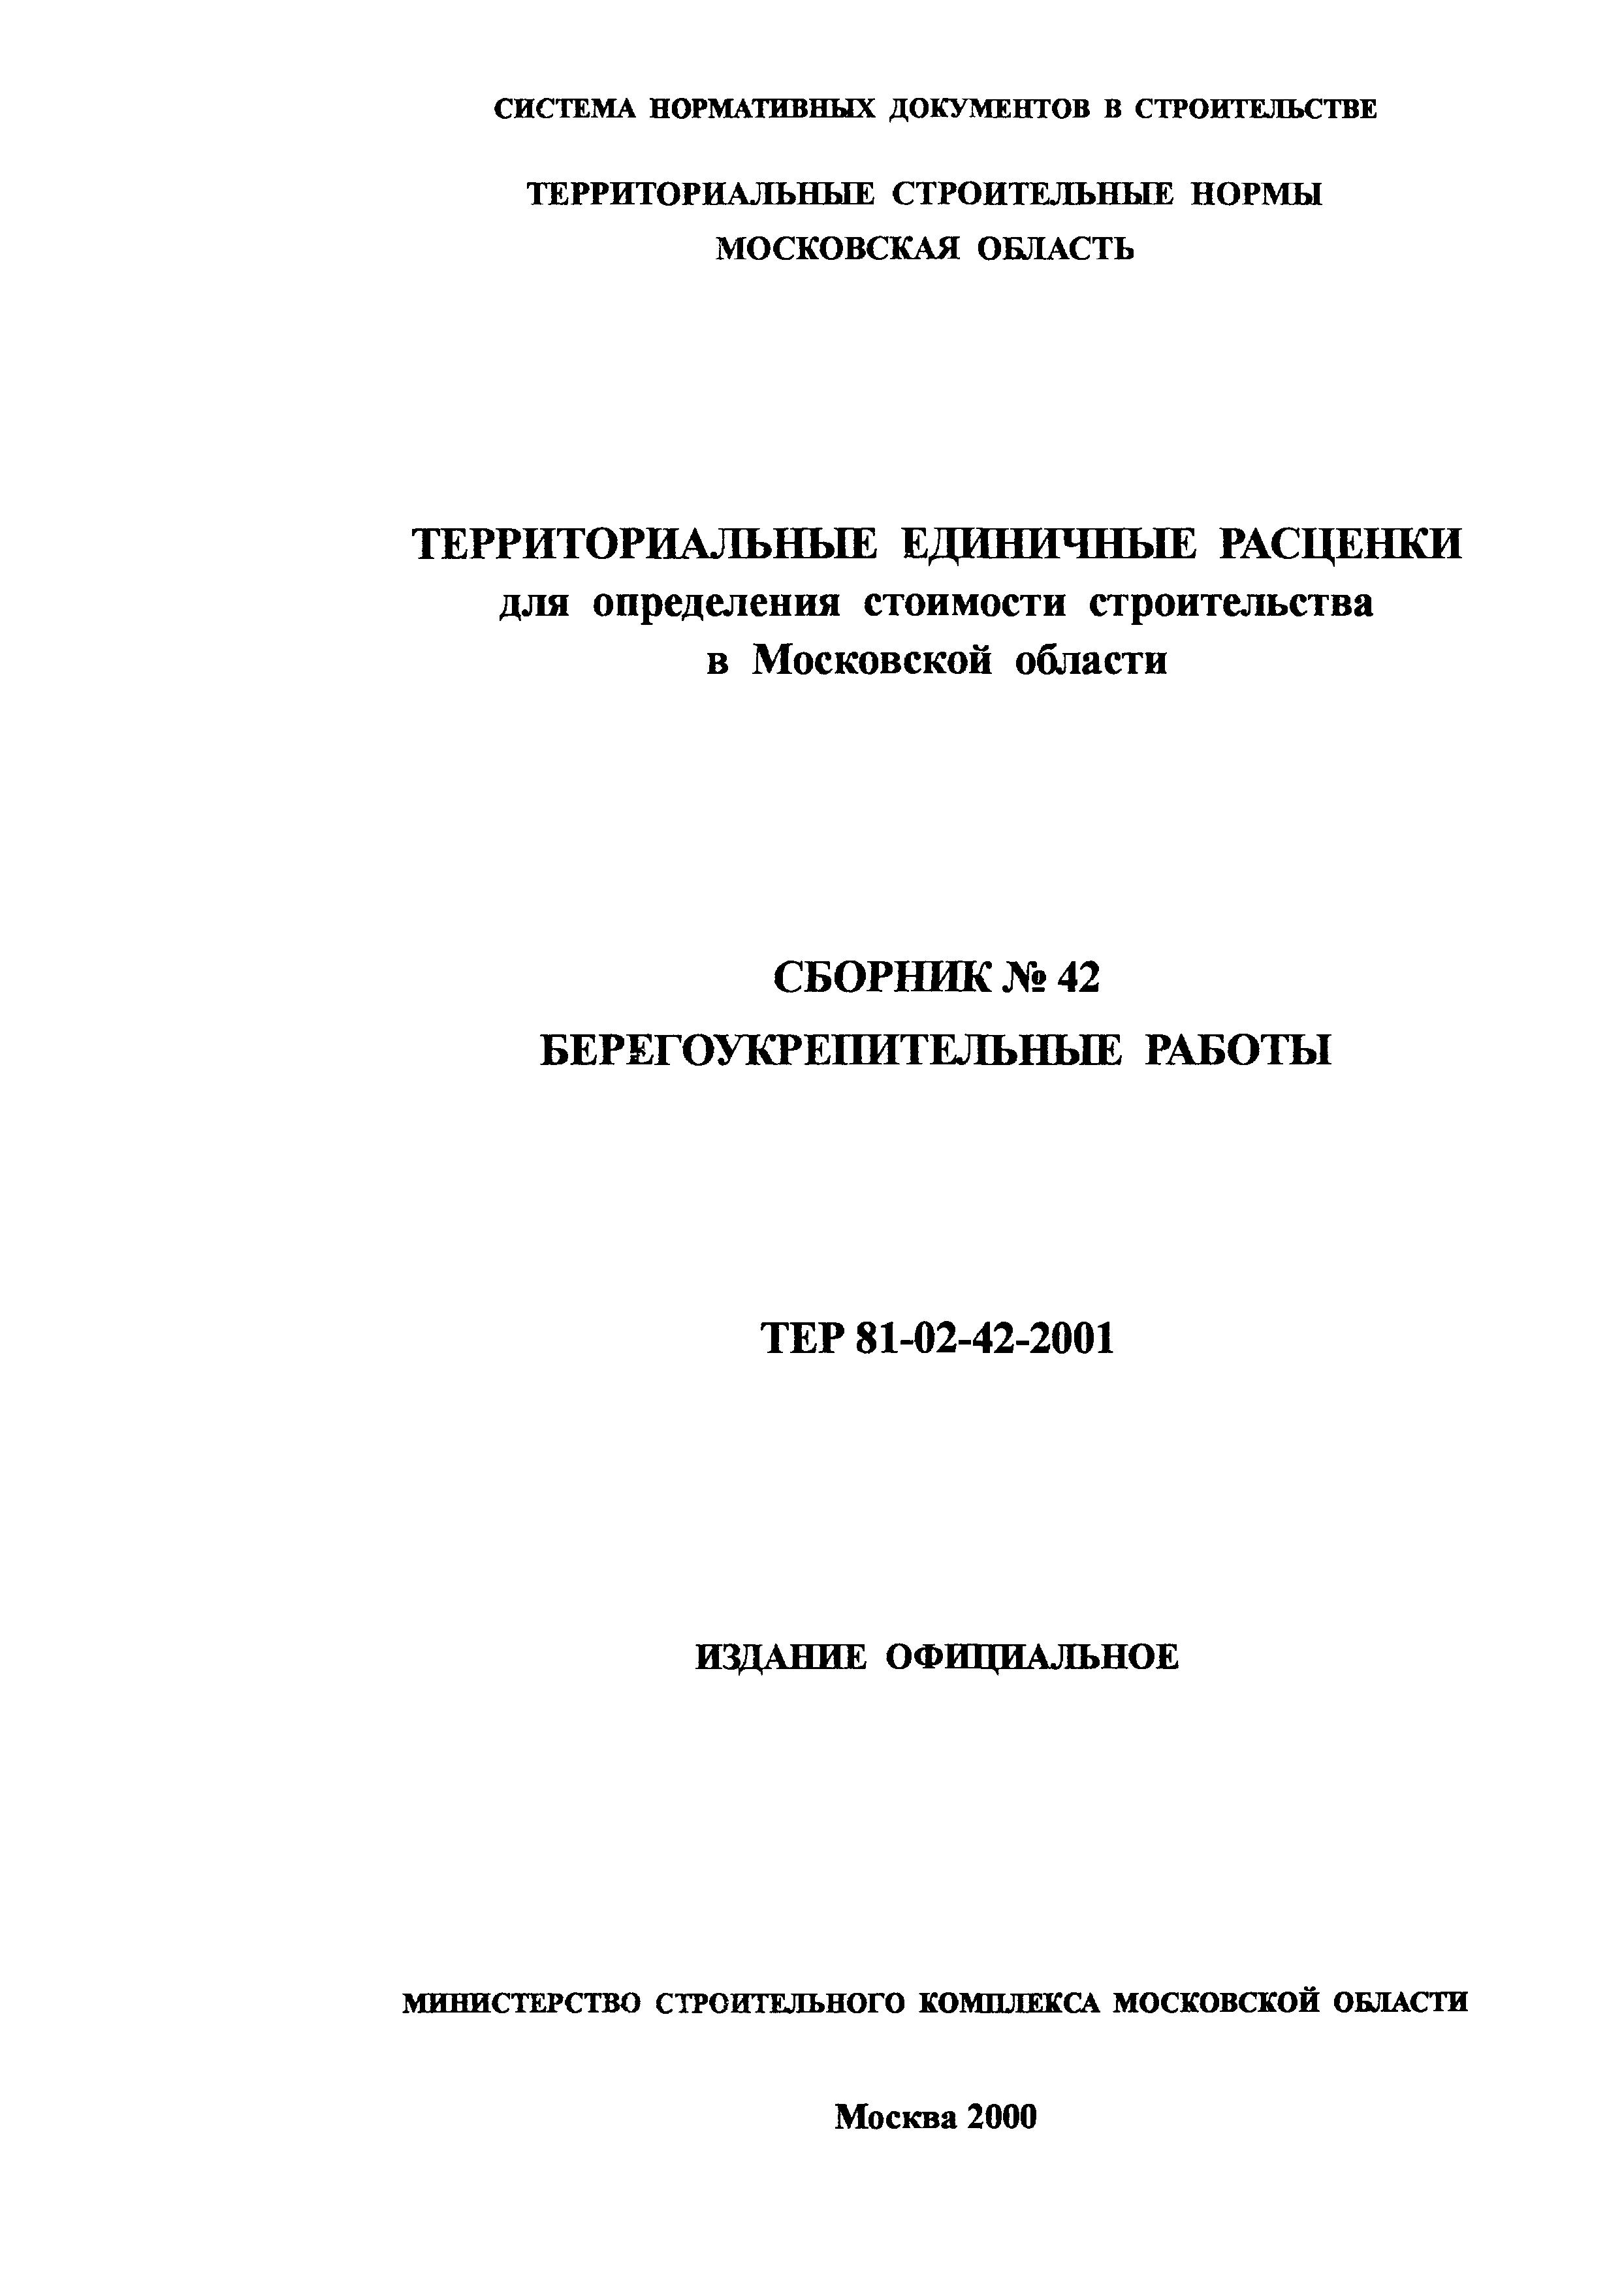 ТЕР 2001-42 Московской области